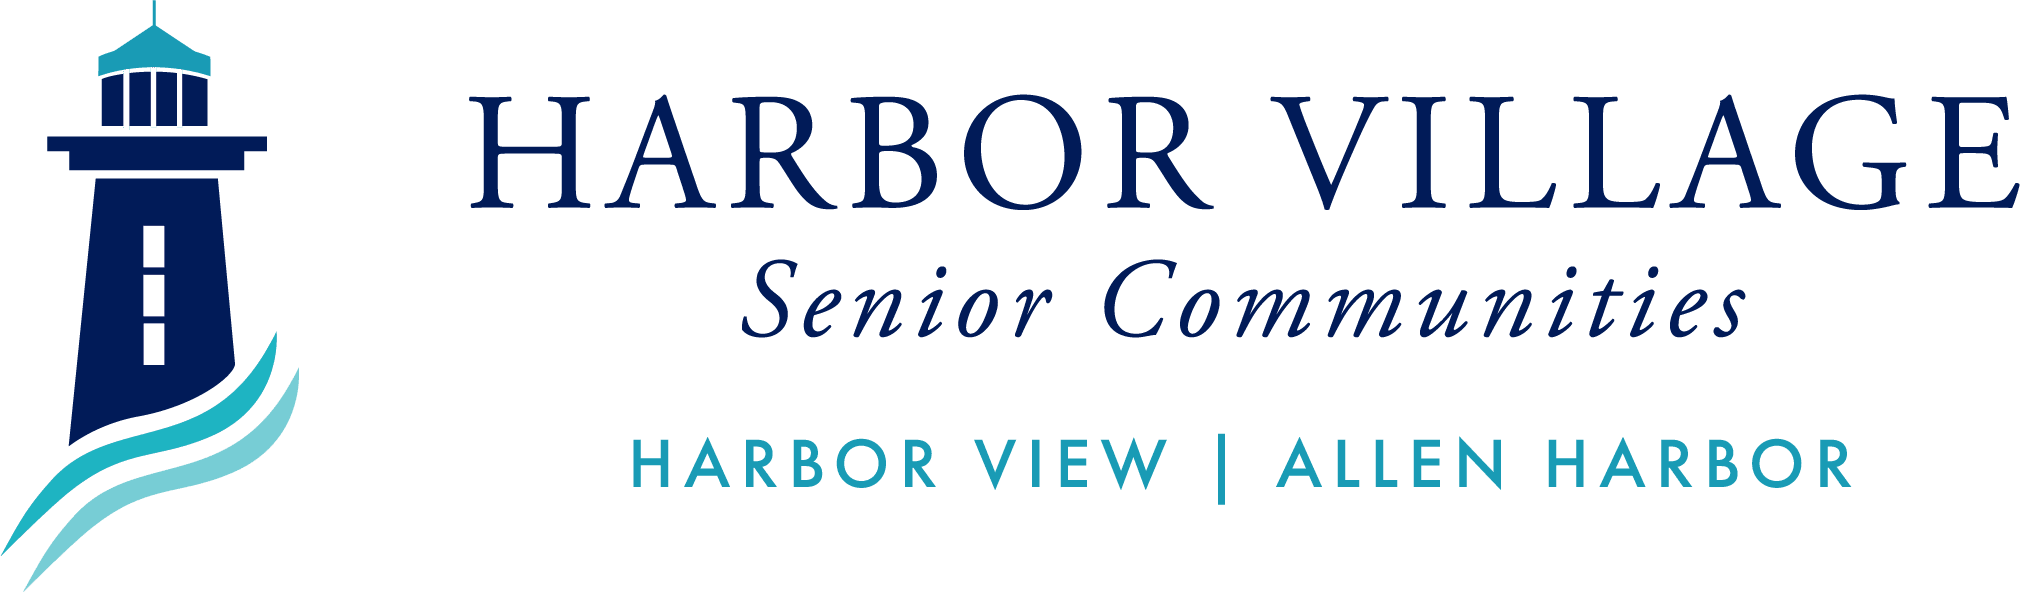 Harbor Village Senior Communities